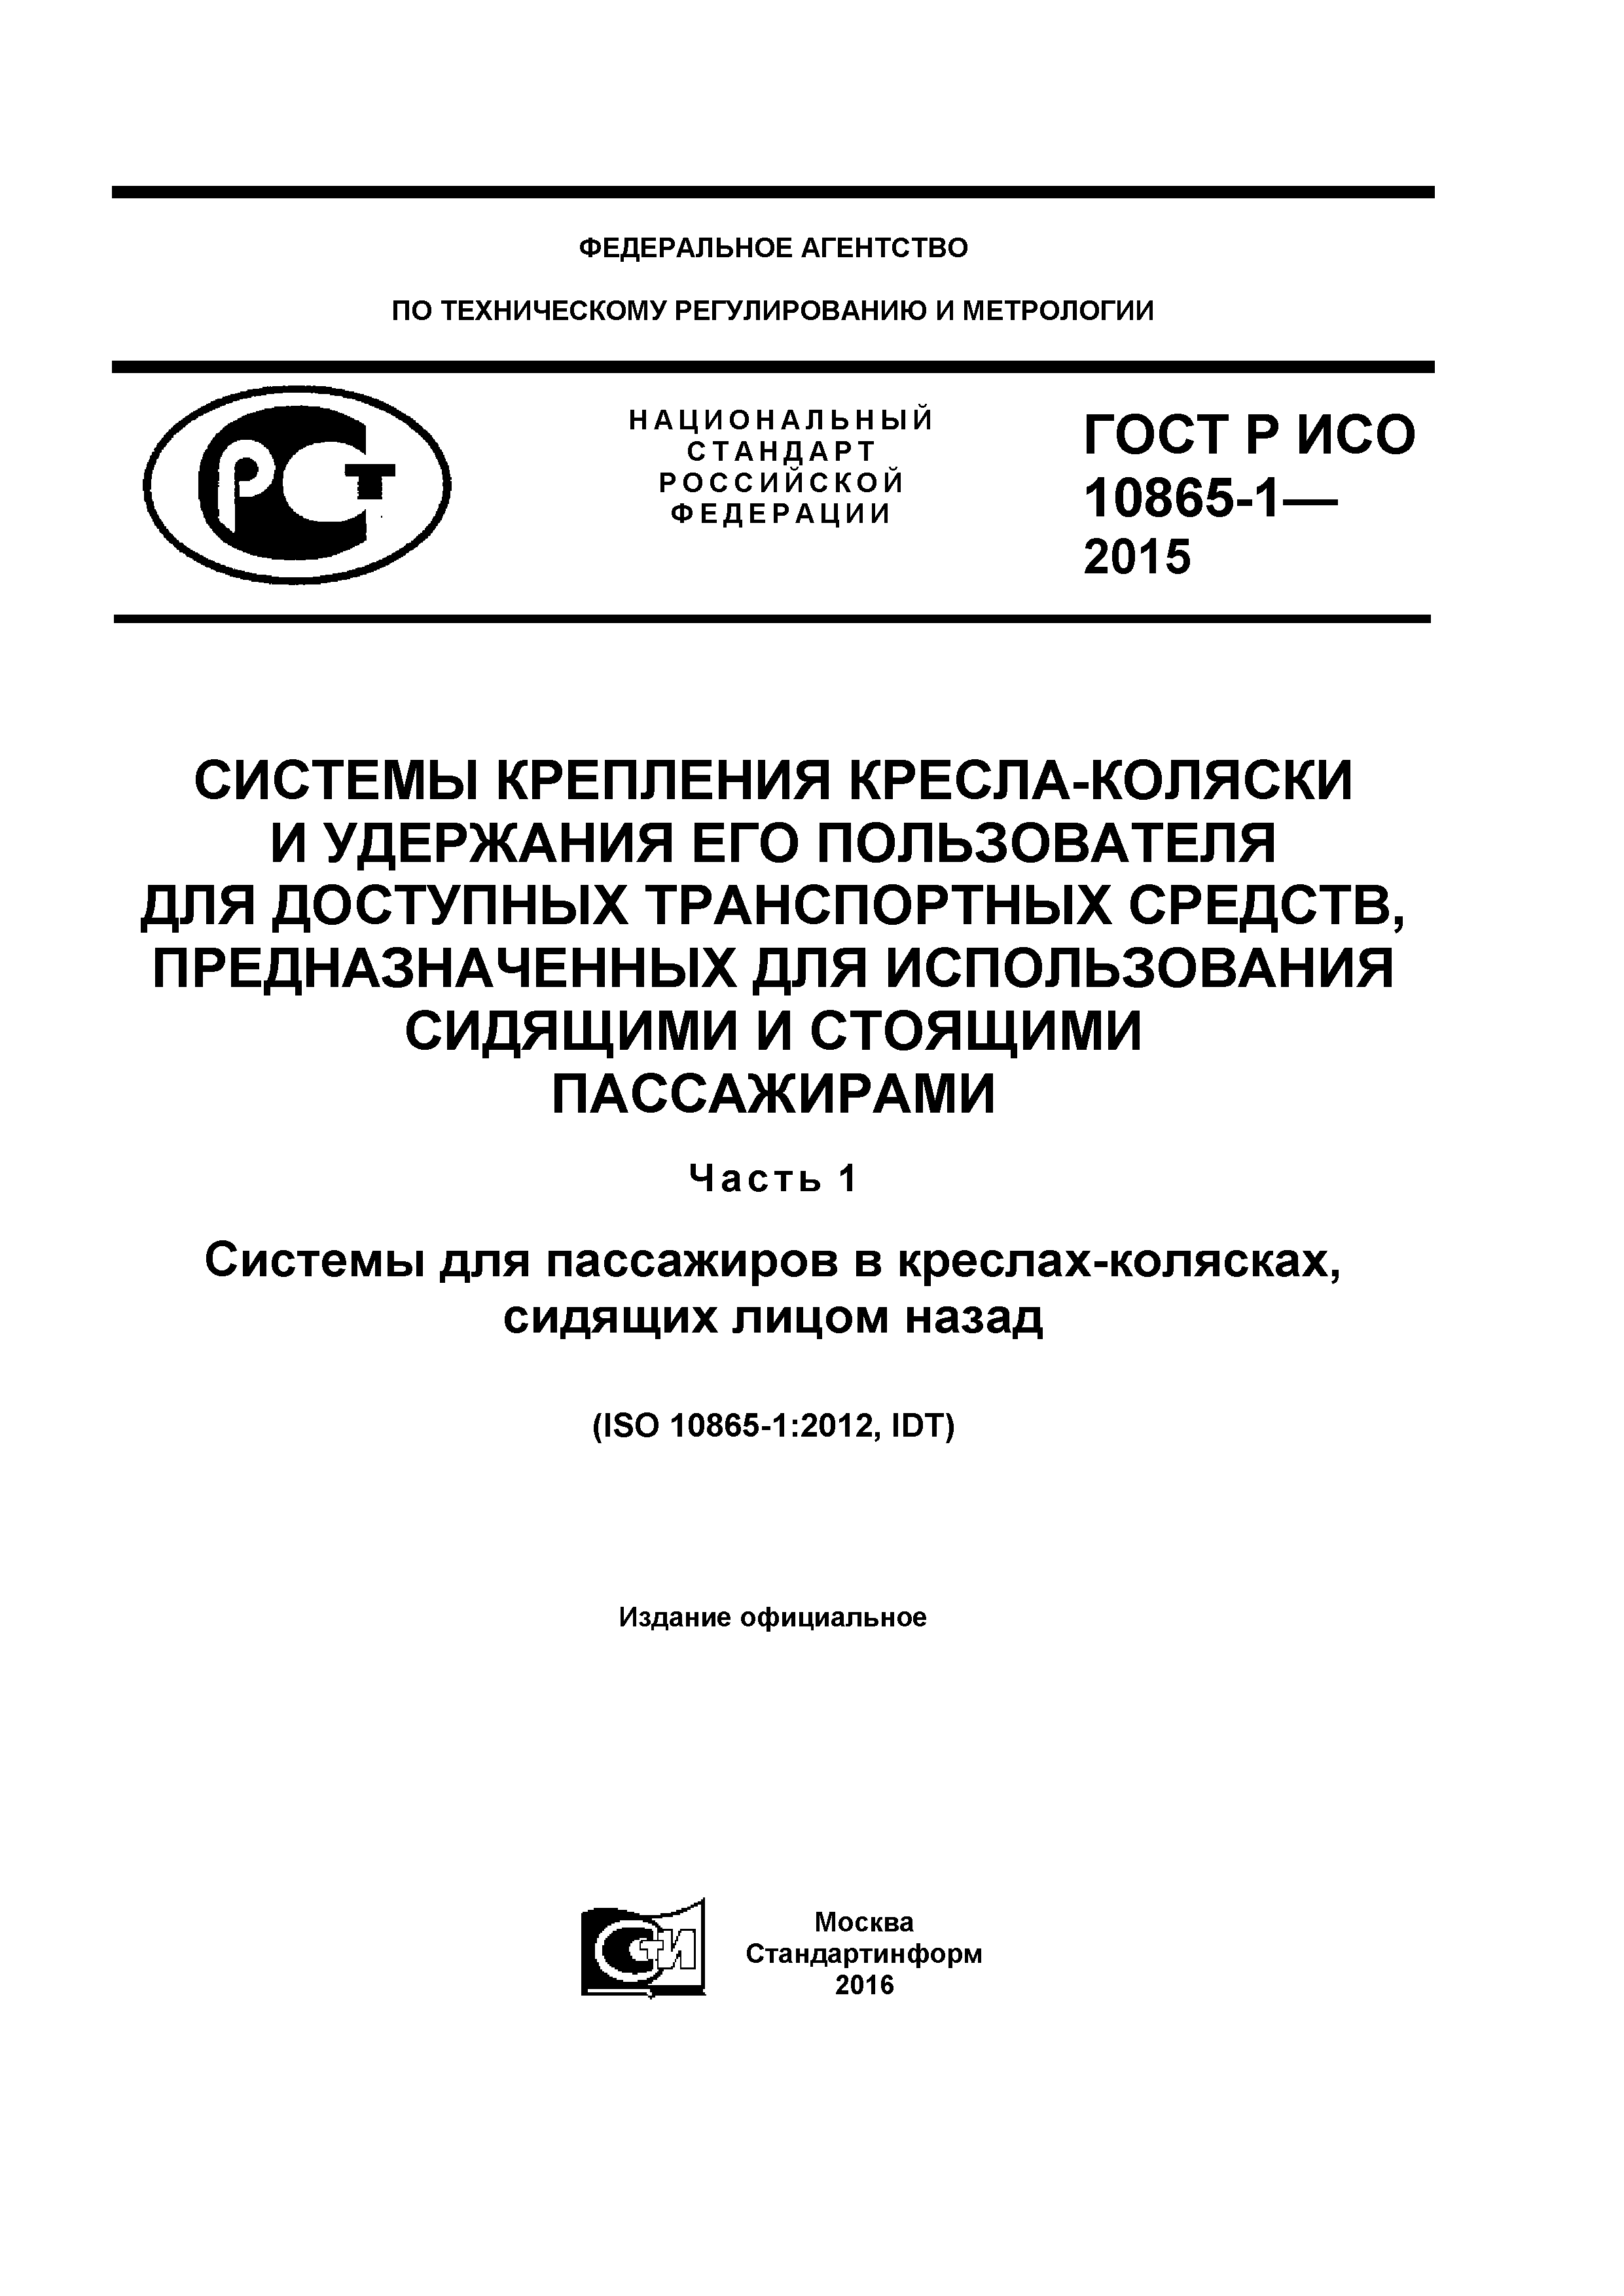 ГОСТ Р ИСО 10865-1-2015